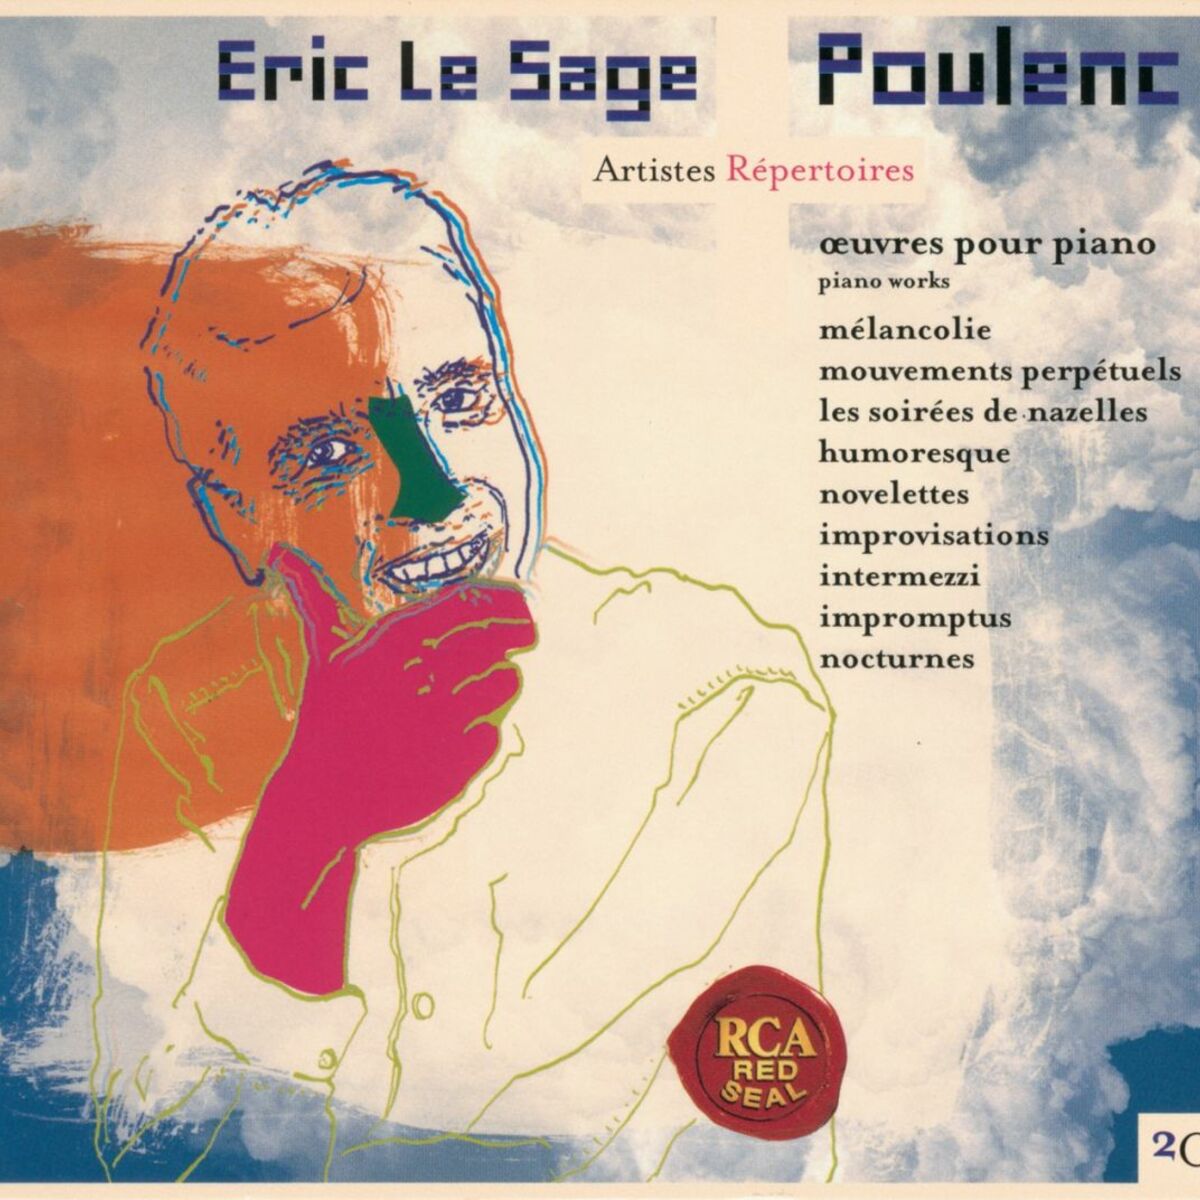 Eric Le Sage: albums